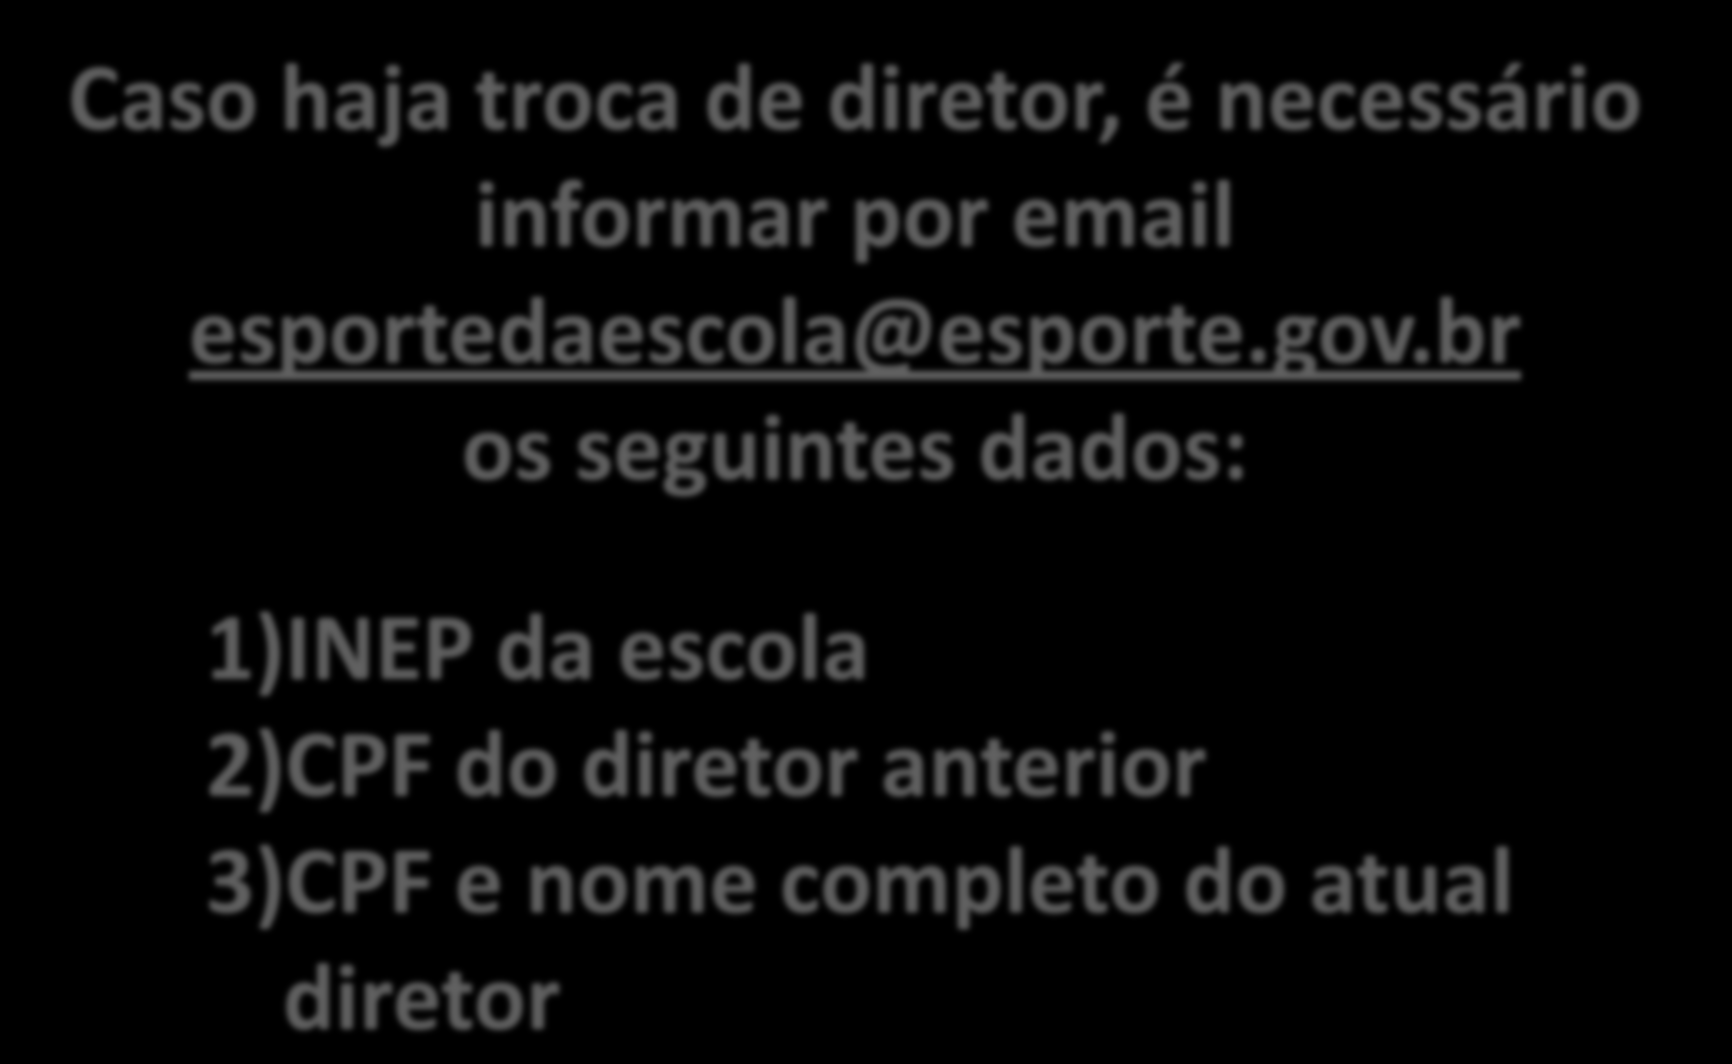 2 Cadastro de diretor Caso haja troca de diretor, é necessário informar por email esportedaescola@esporte.